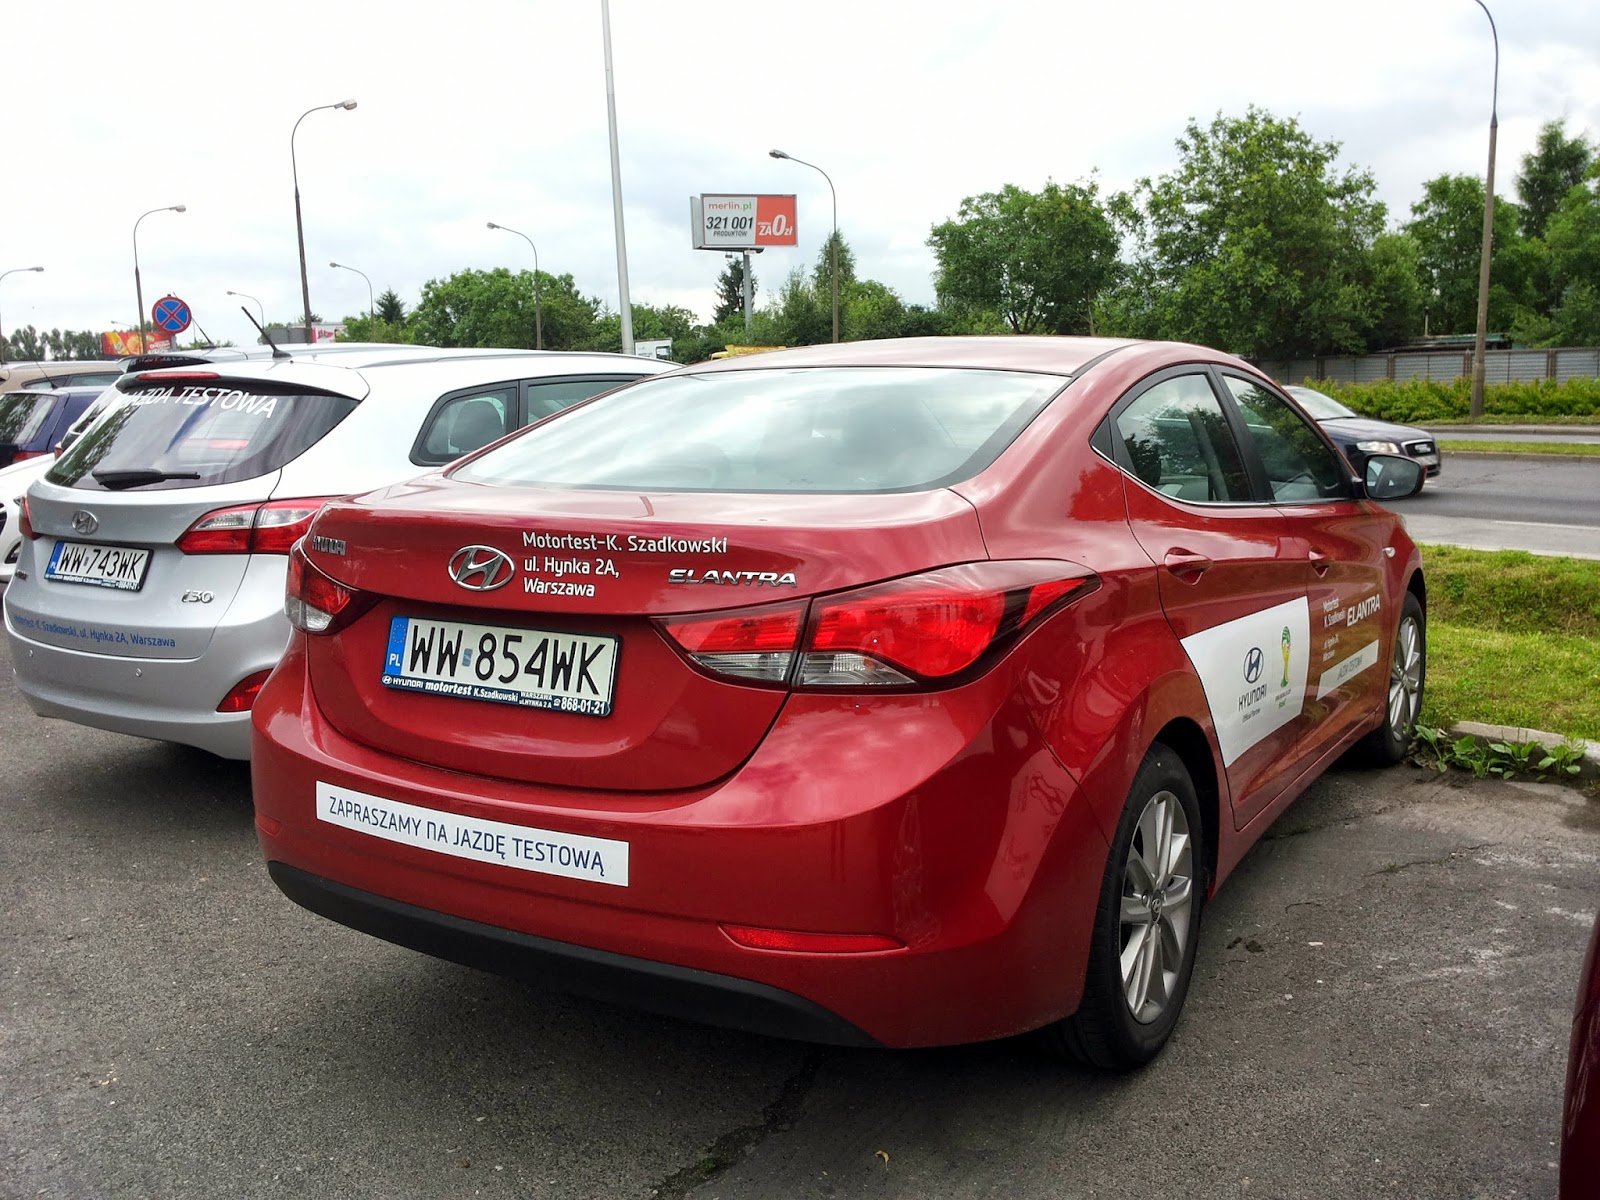 Old Parked Cars Warsaw Tak się wozimy Hyundai Elantra